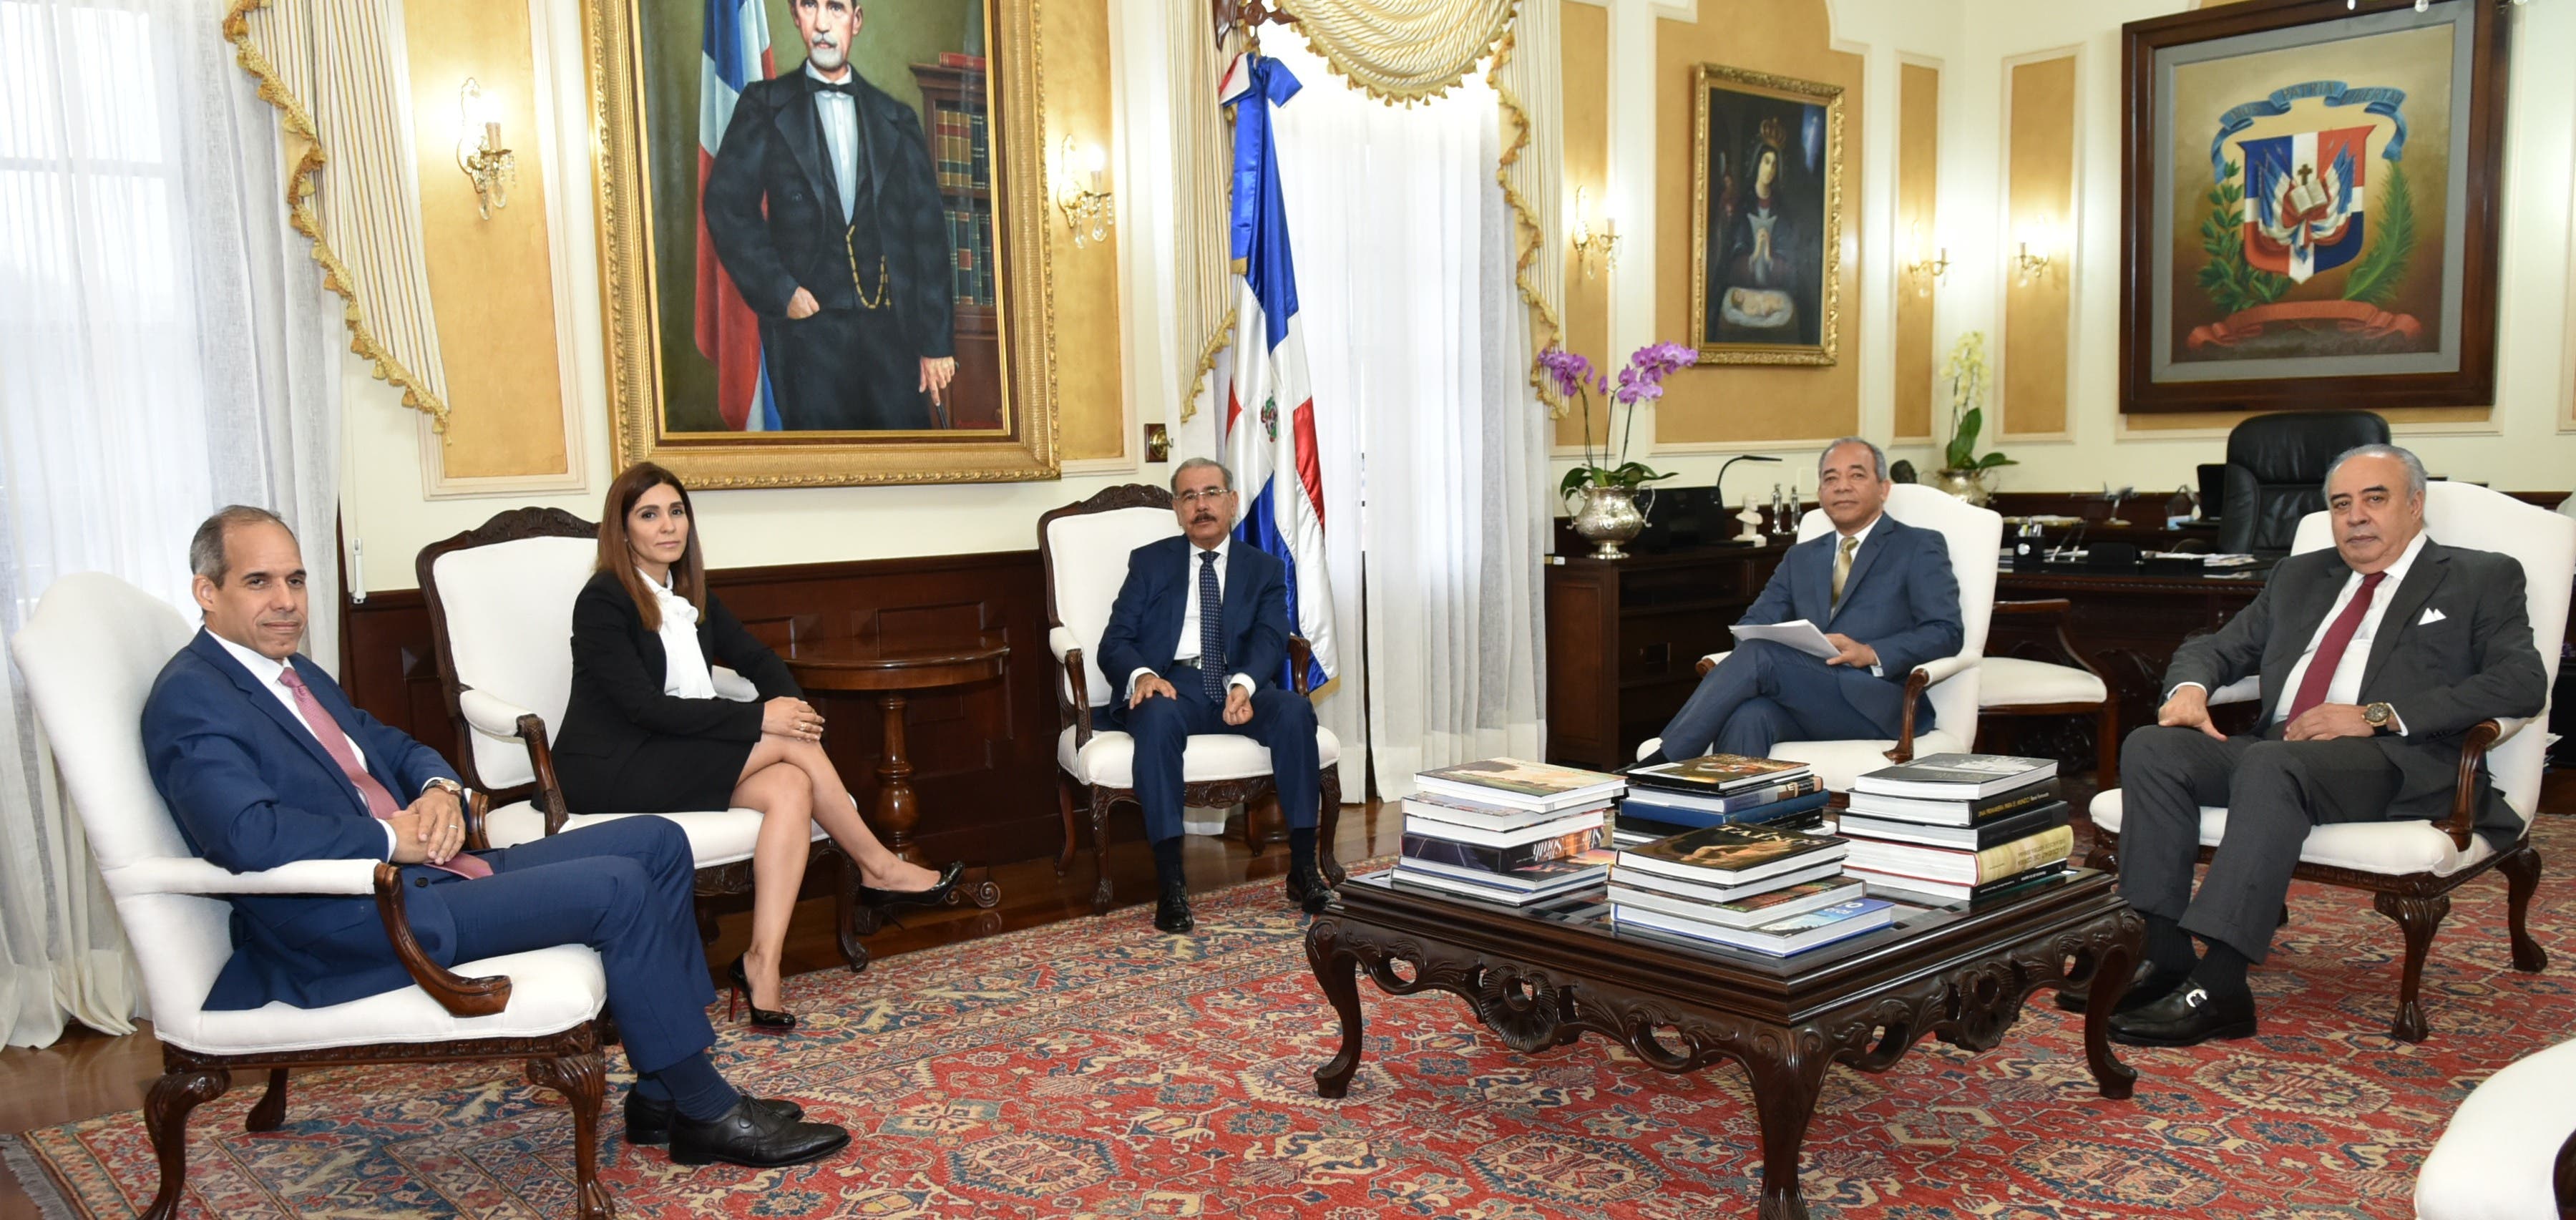 La informaciÃ³n fue ofrecida durante una reuniÃ³n con el presidente Danilo Medina en el Palacio Nacional.